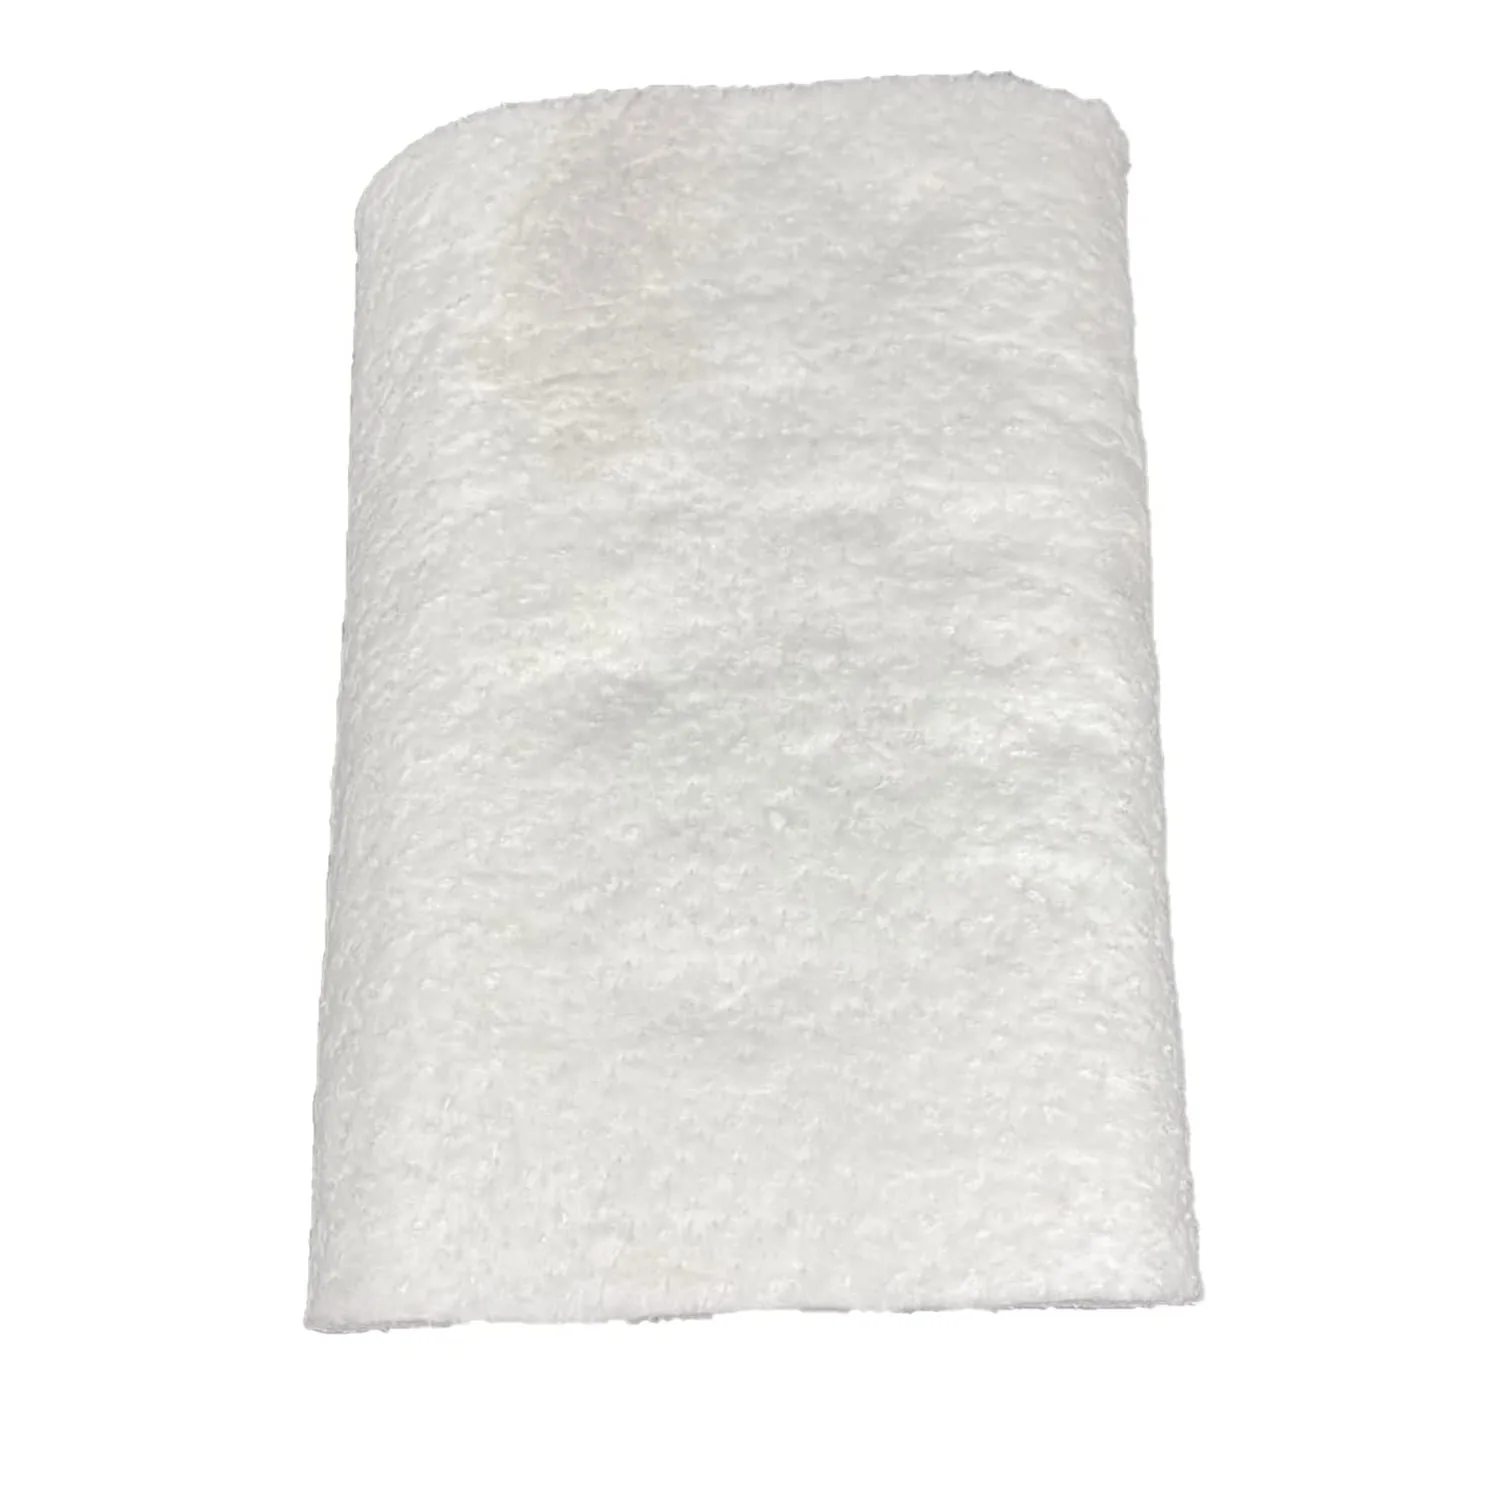 1260 керамическое волокно шерстяное одеяло рулон изоляции Superwool керамическое шерстяное одеяло волокно заводская цена 1260 градусов керамическое волокно (1600770205292)